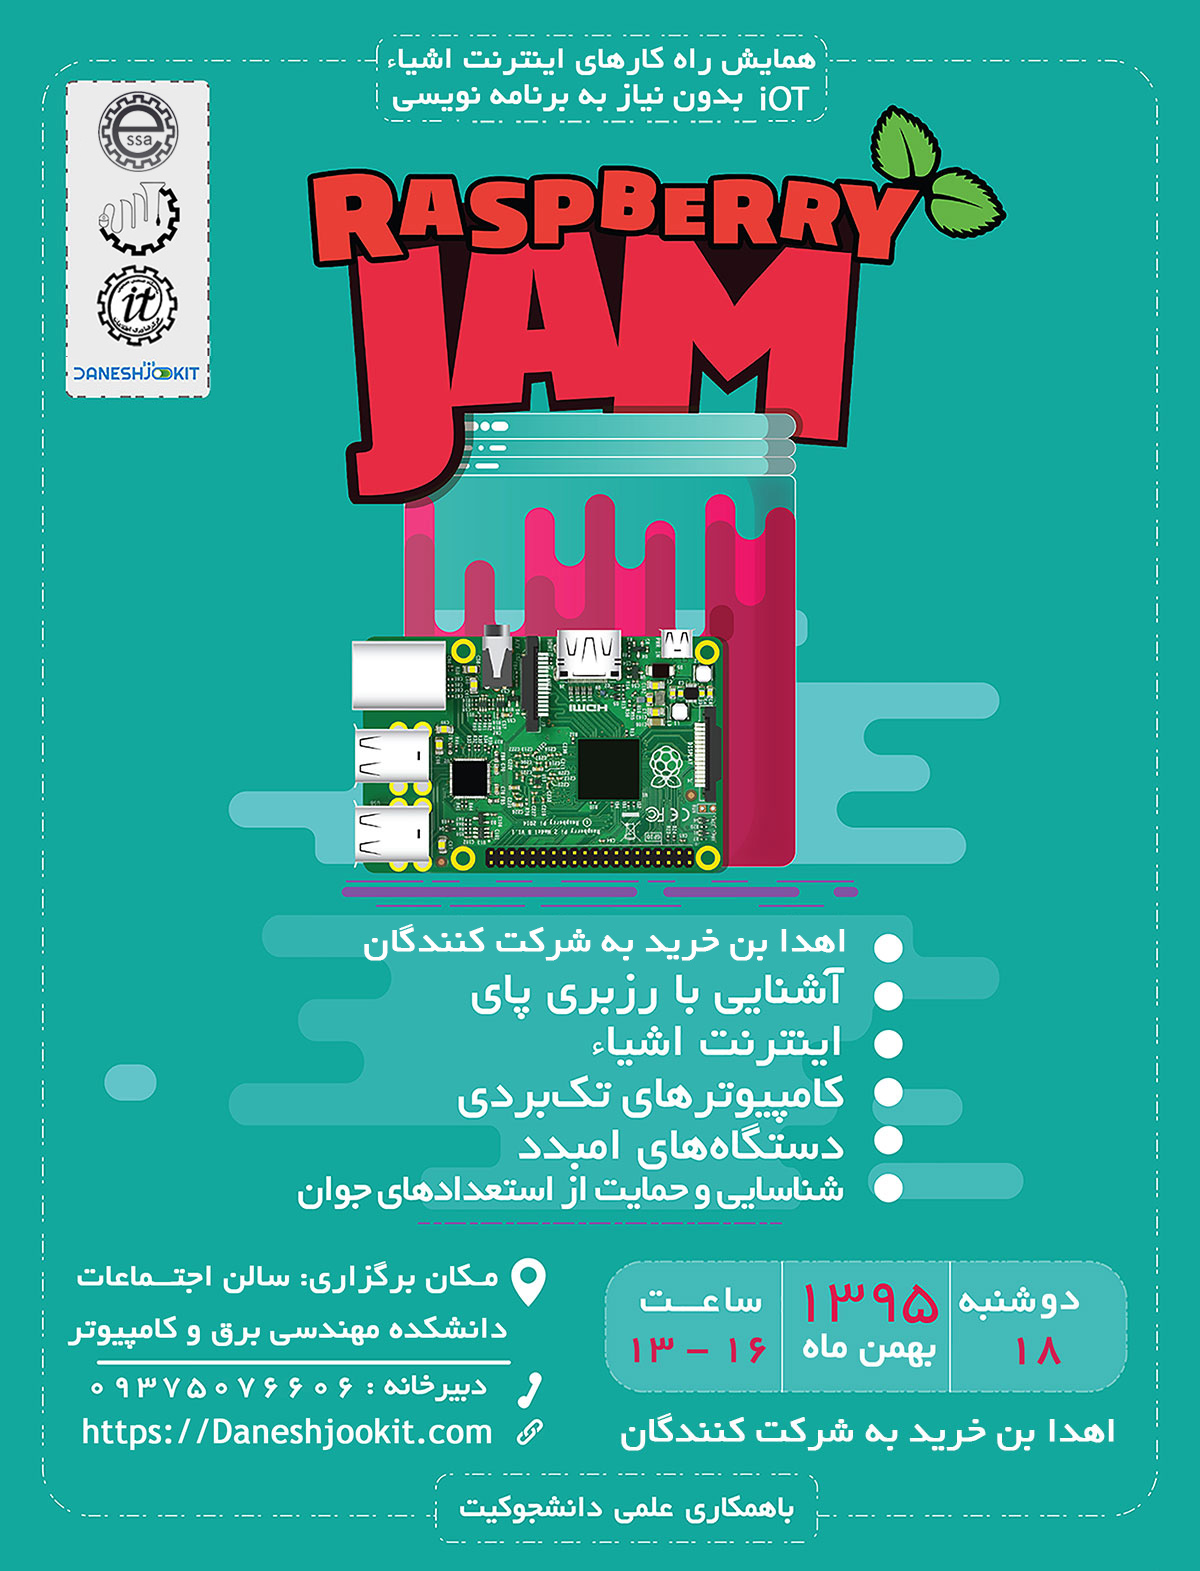 همایش رزبری پای دانشگاه صنعتی اصفهان - دانشجوکیت raspberry jam